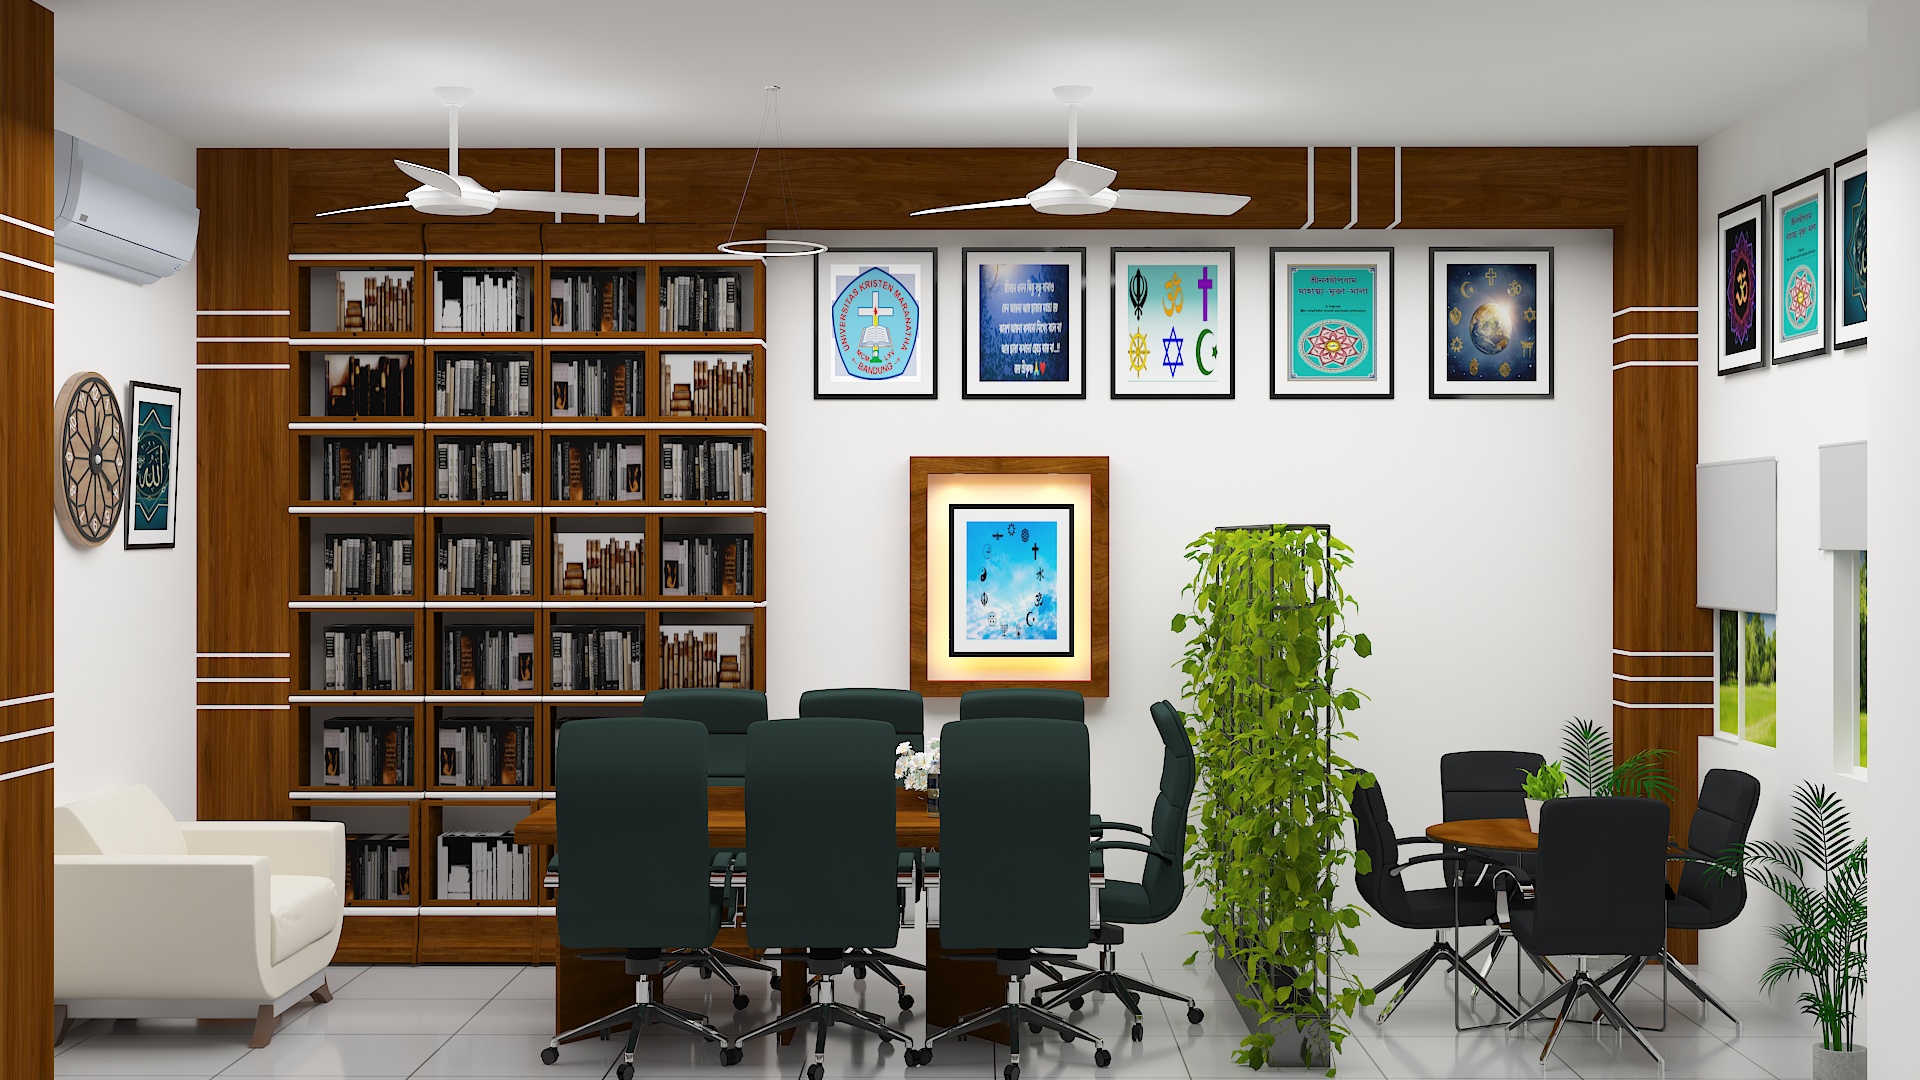 University Seminar Room & Office Interior